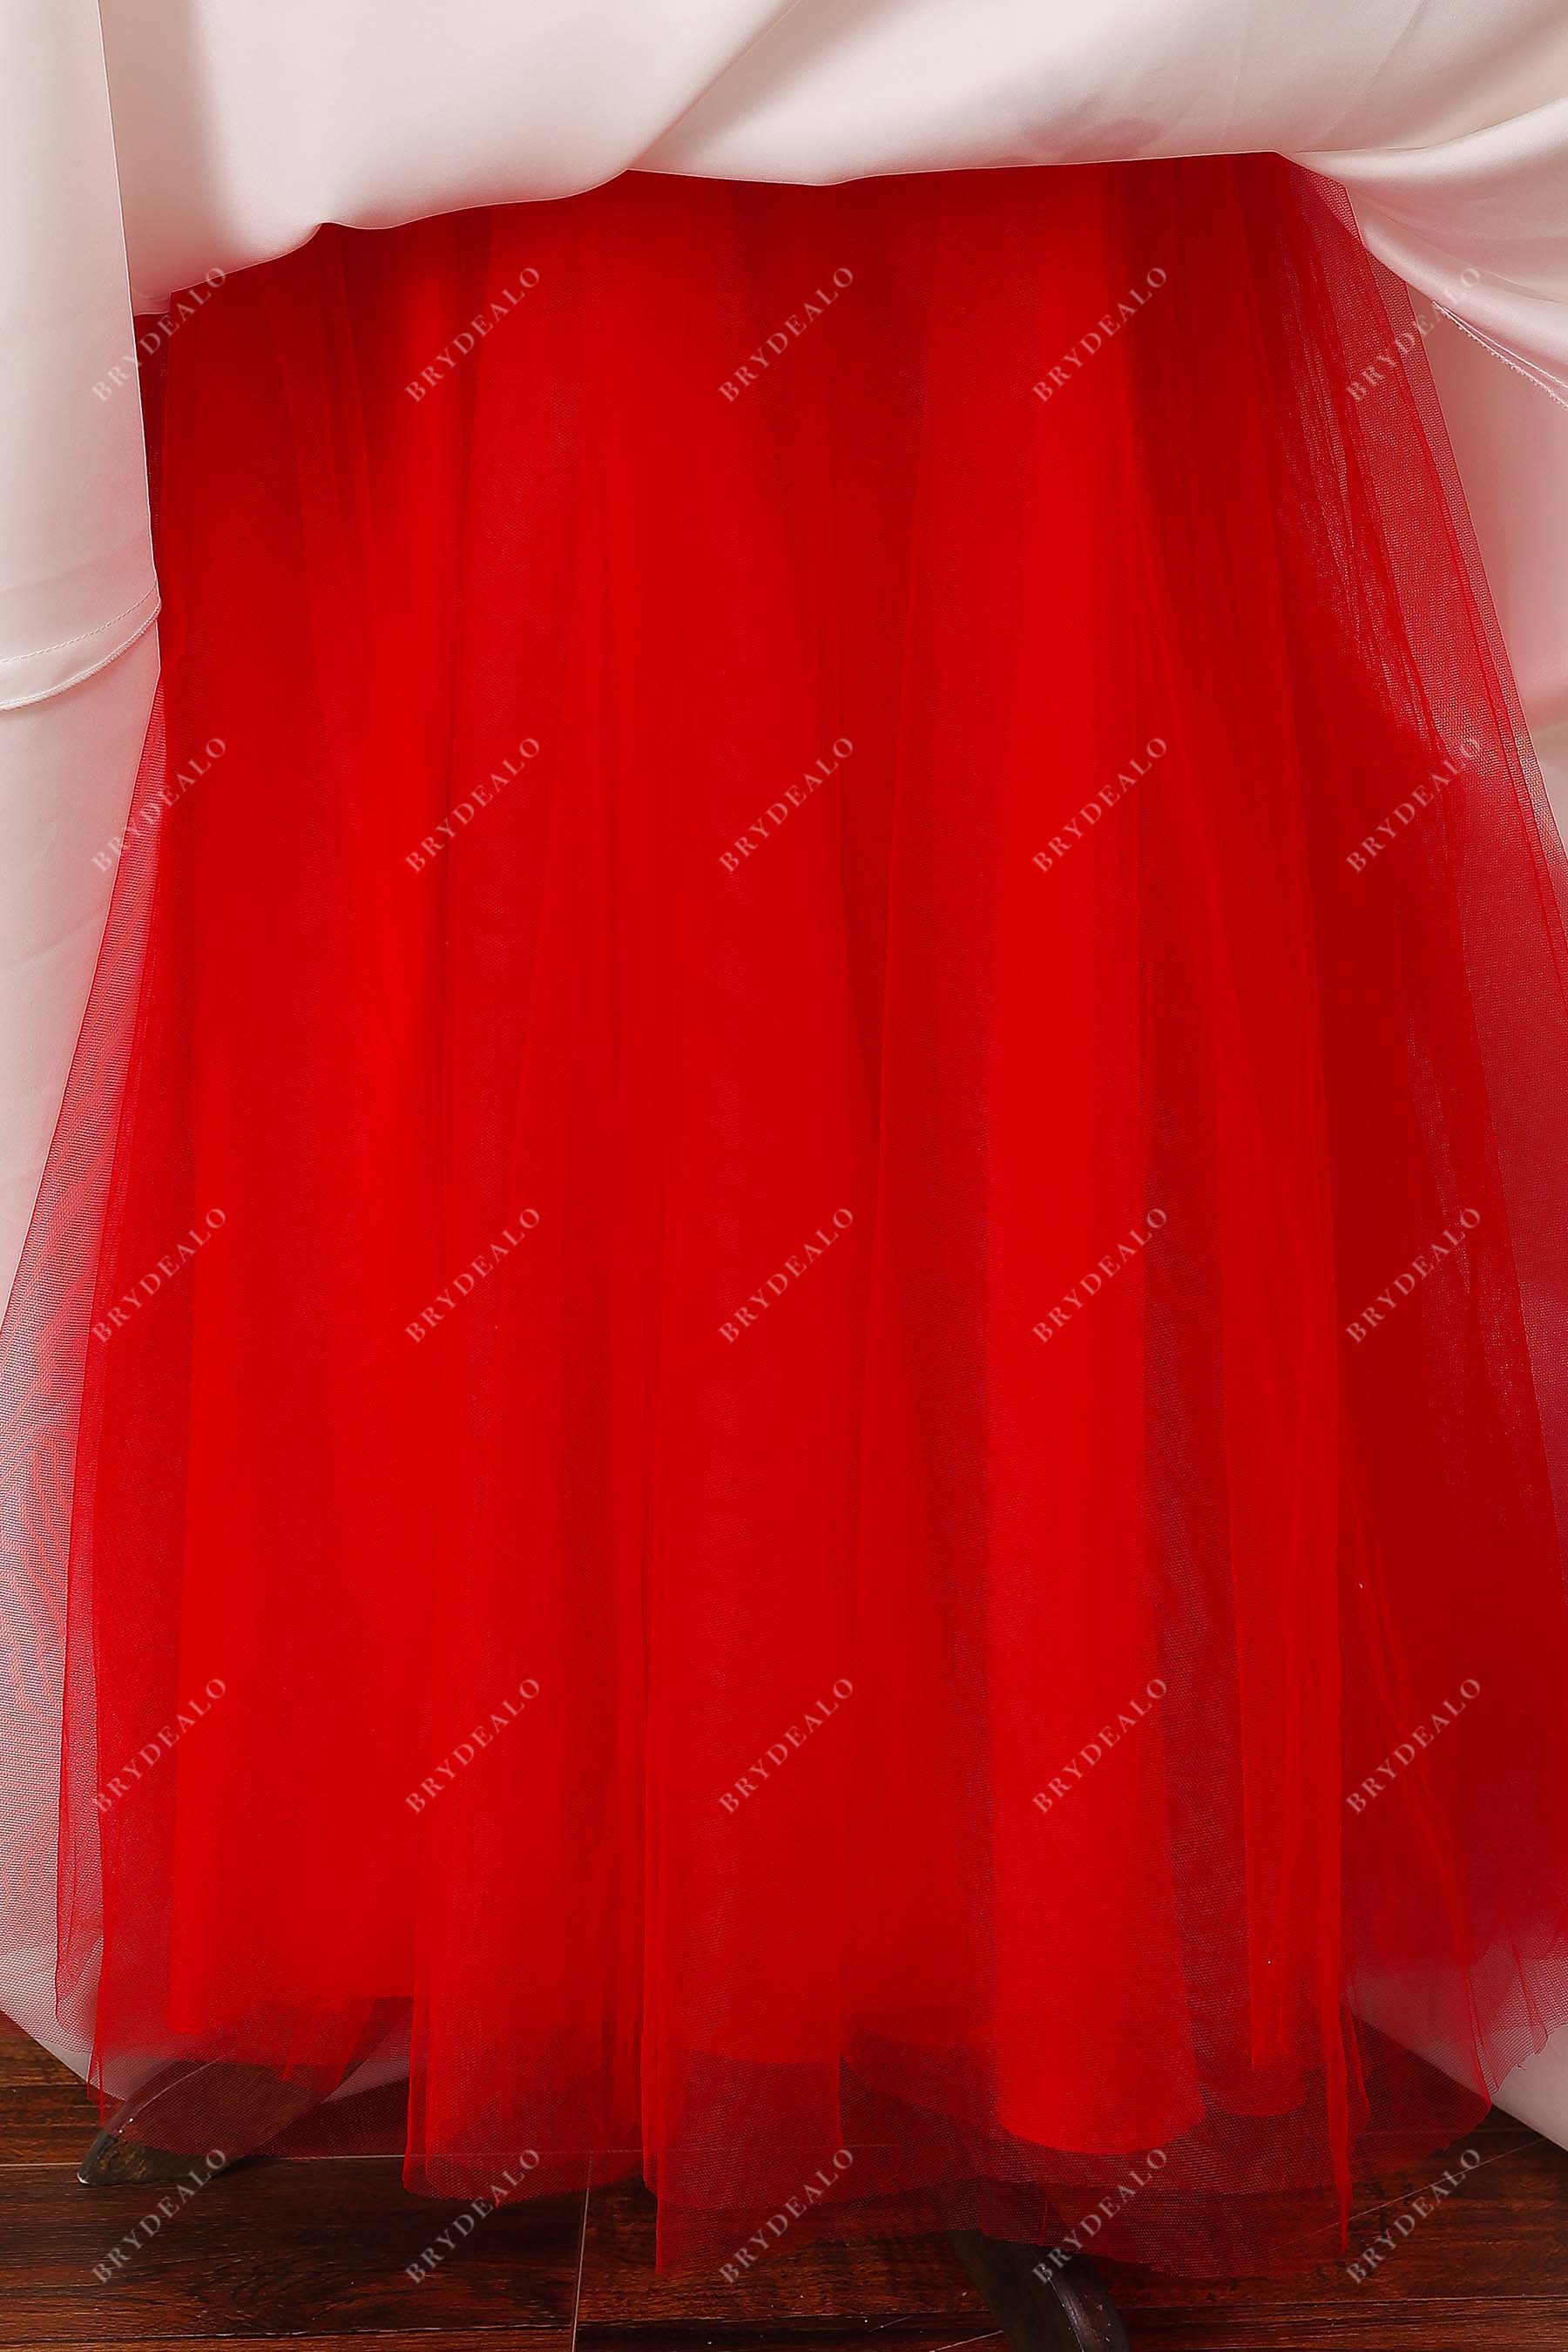 red inner tulle skirt